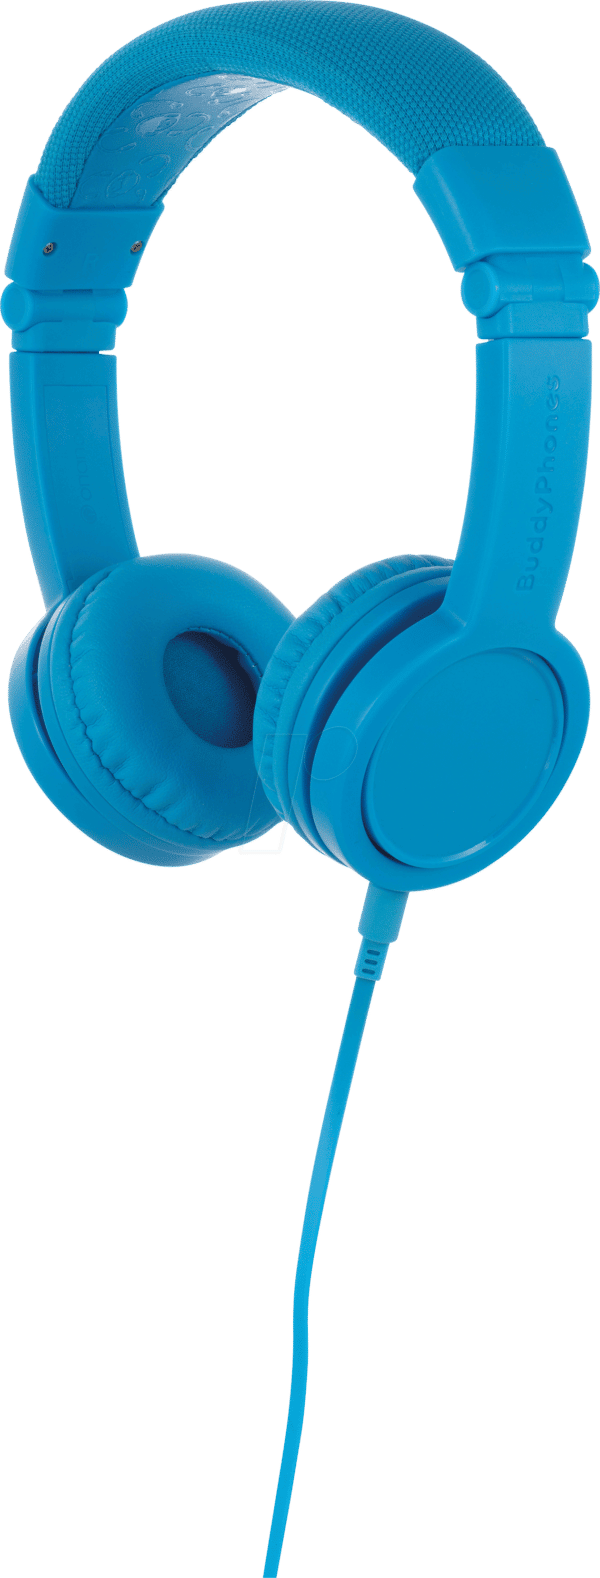 ONA EXPLORE BL - Kopfhörer für Kinder